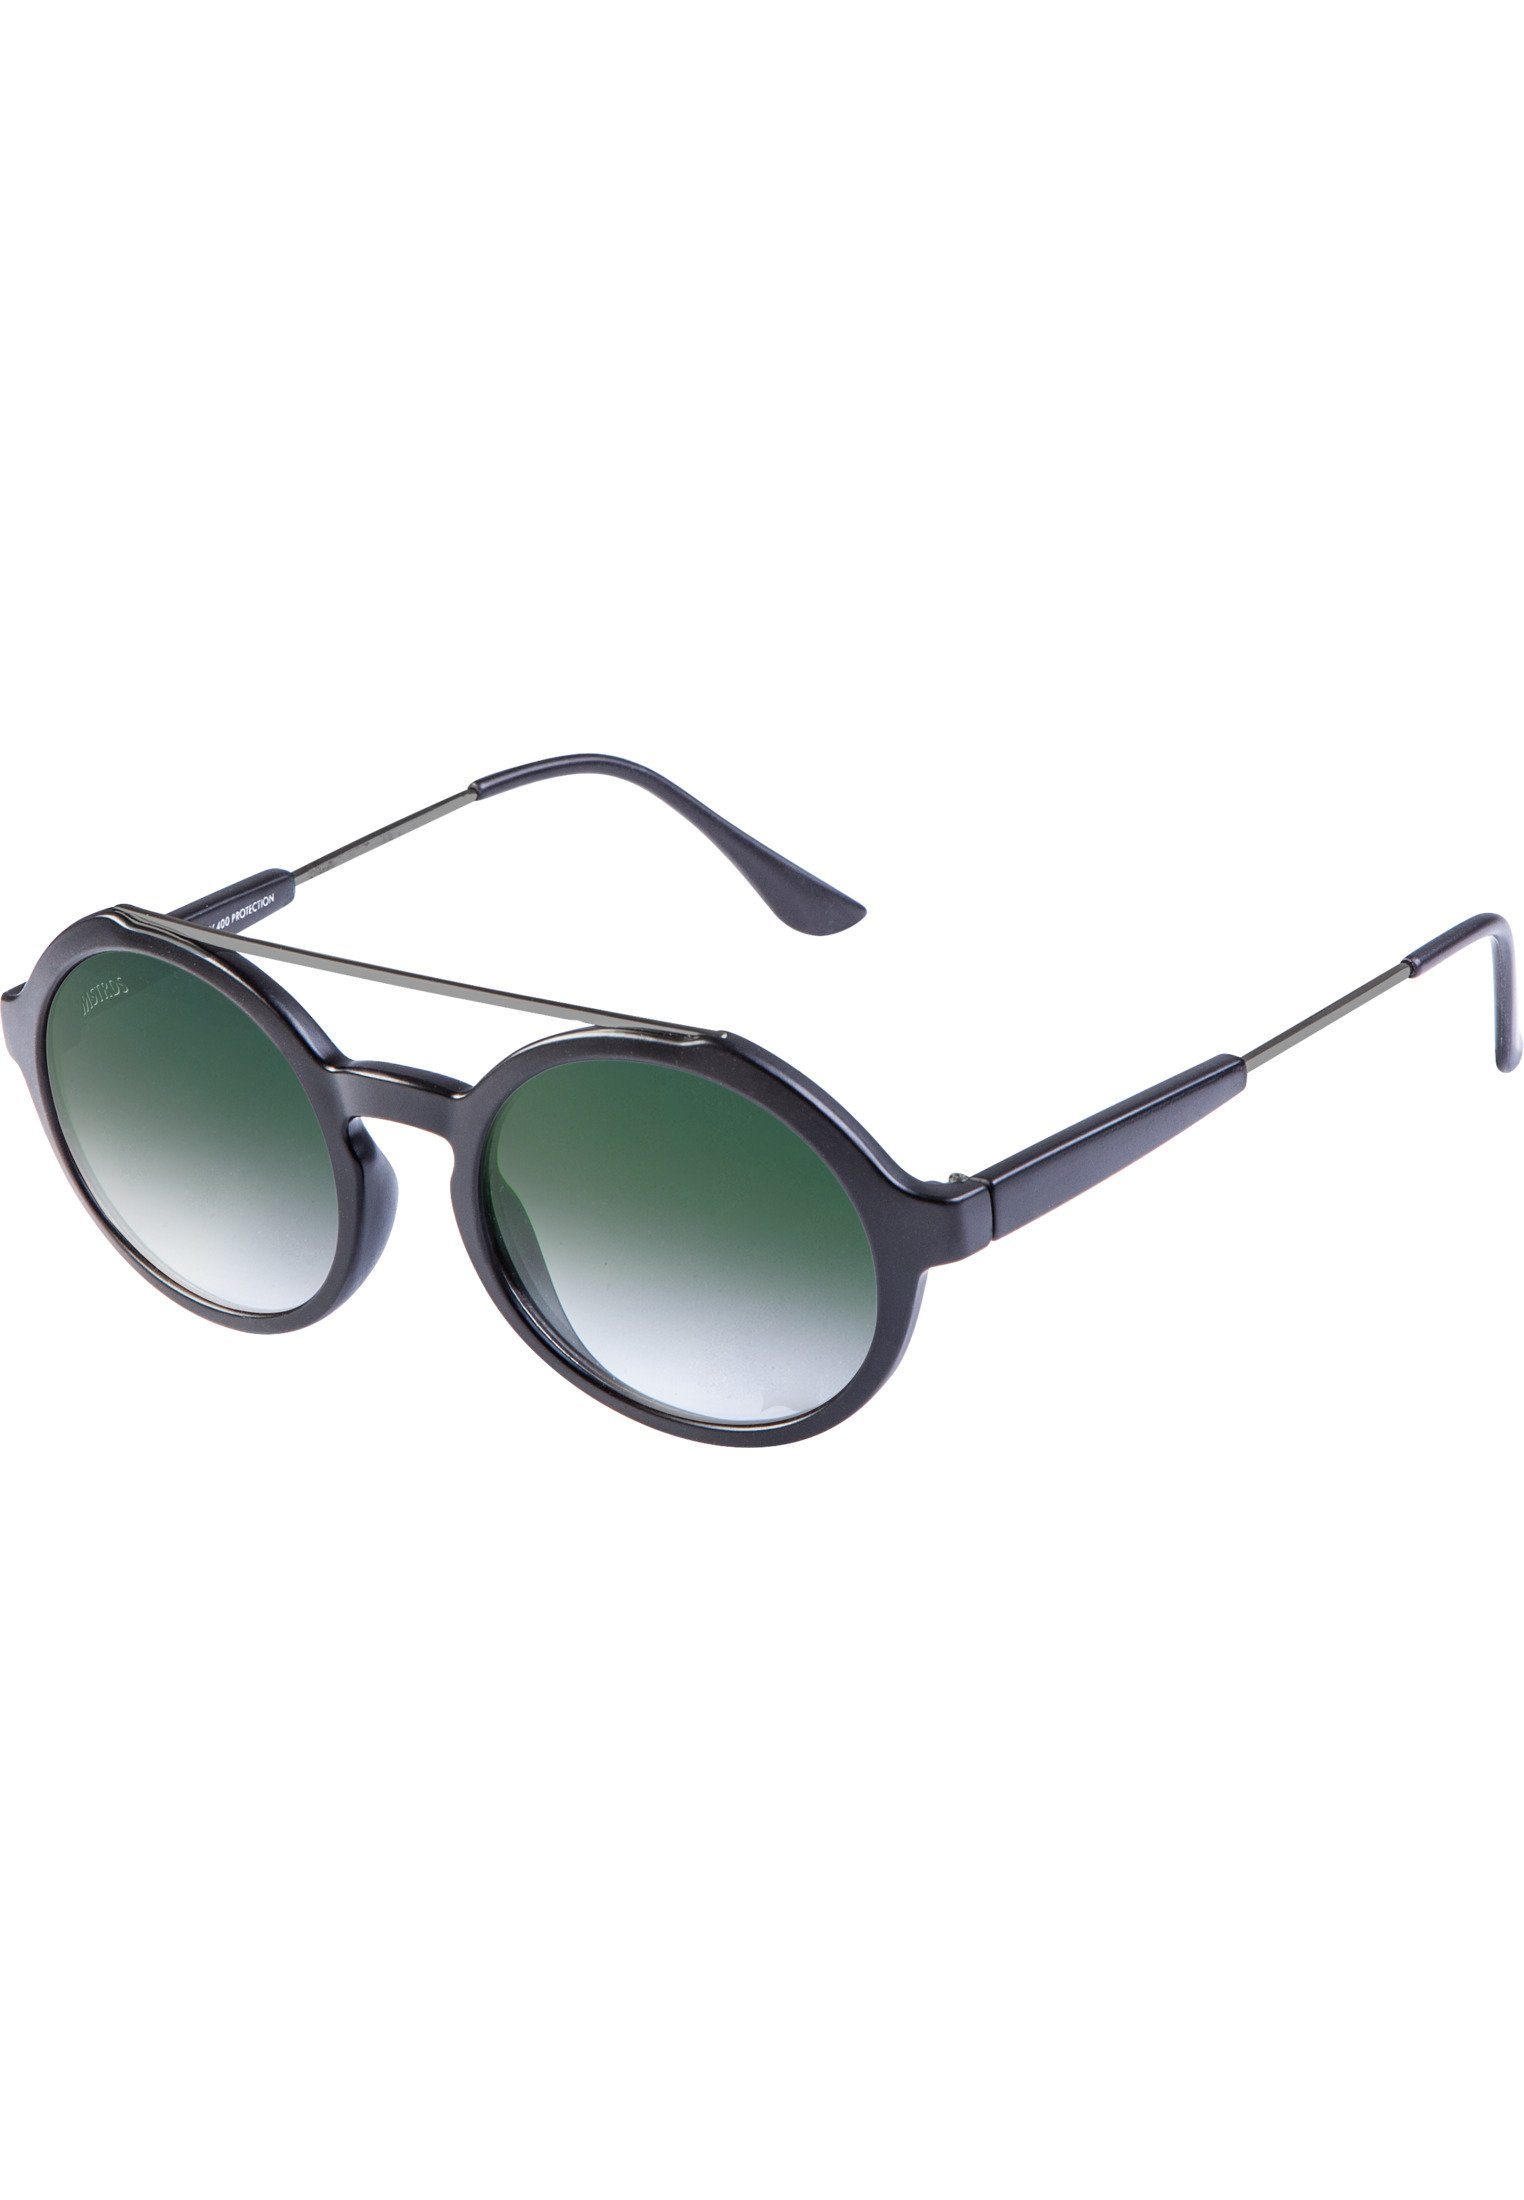 Retro Sunglasses Space Accessoires blk/grn MSTRDS Sonnenbrille